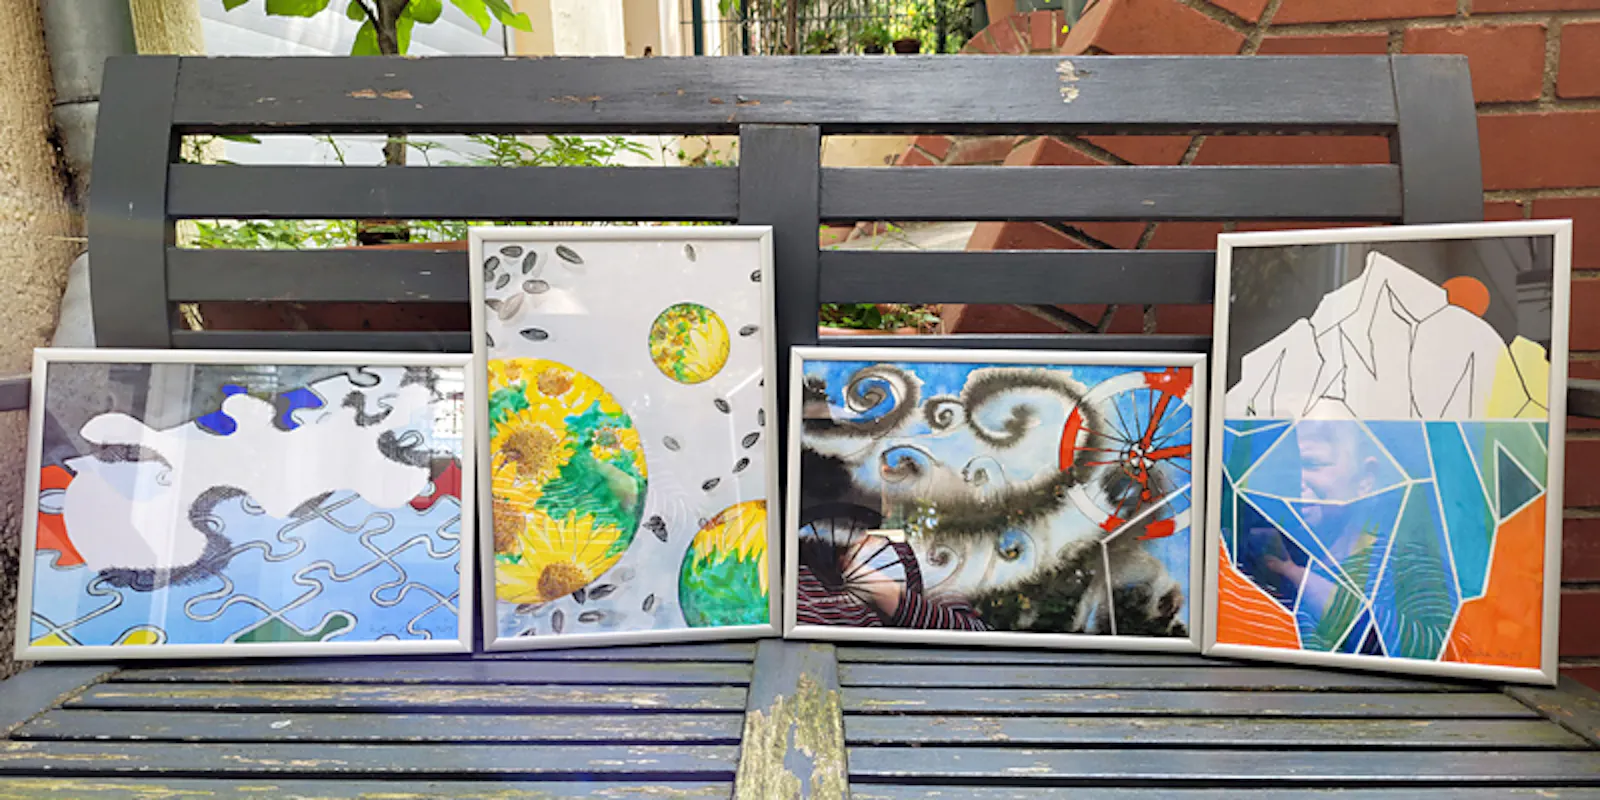 Schnappschuss von 4 Aquarellen auf einer Gartenbank mitden Titeln:  Freiheit, Sonnenblumen, Rückenwind sowie Bergen und Fasssauna.